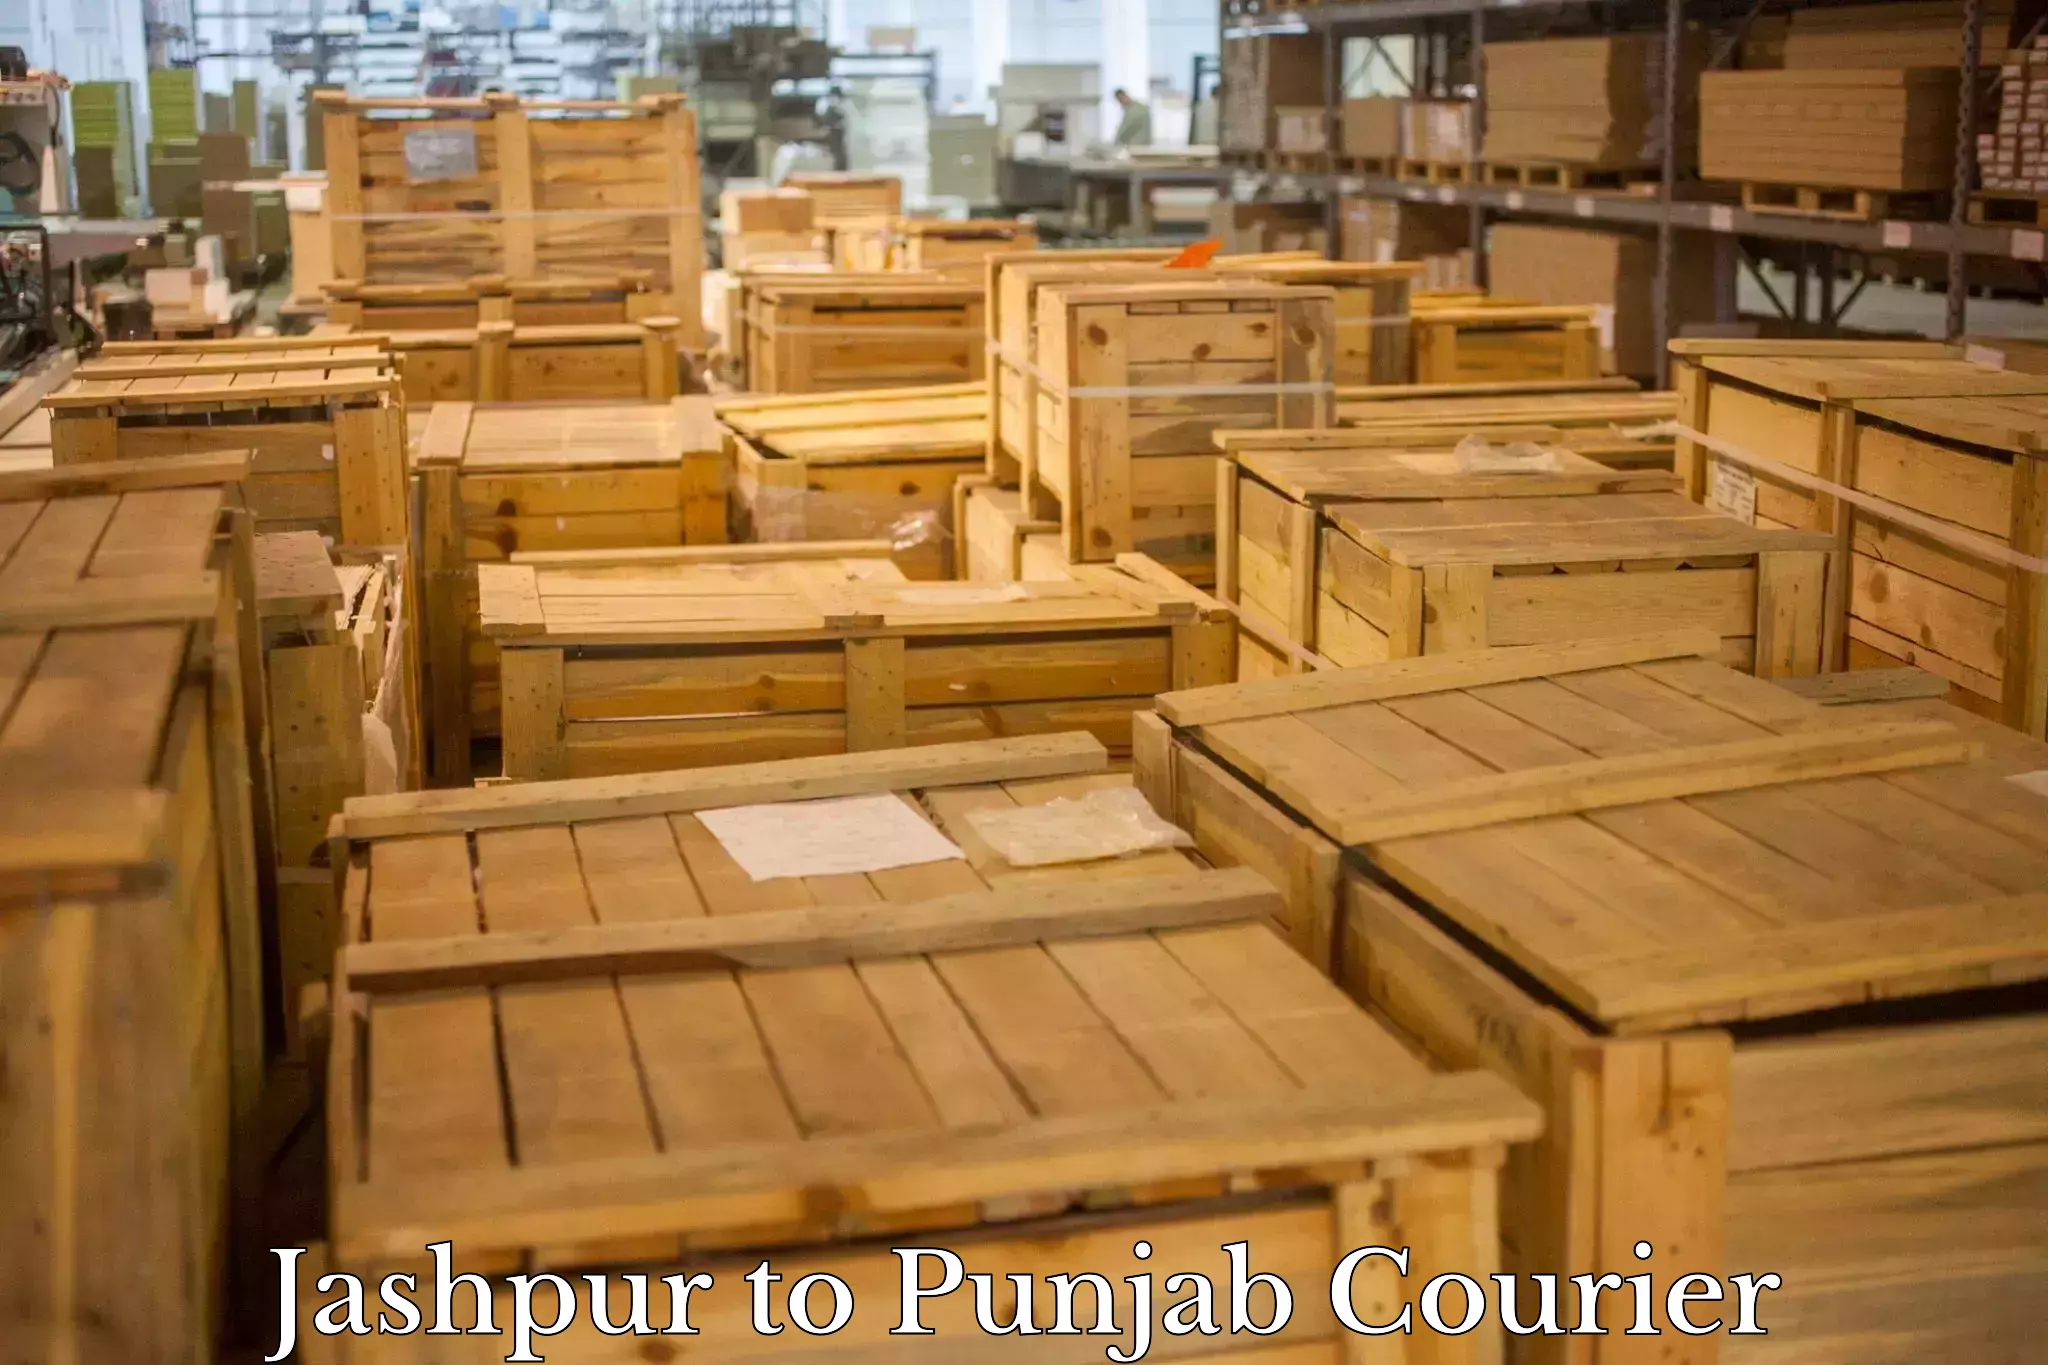 Efficient parcel service Jashpur to Samana